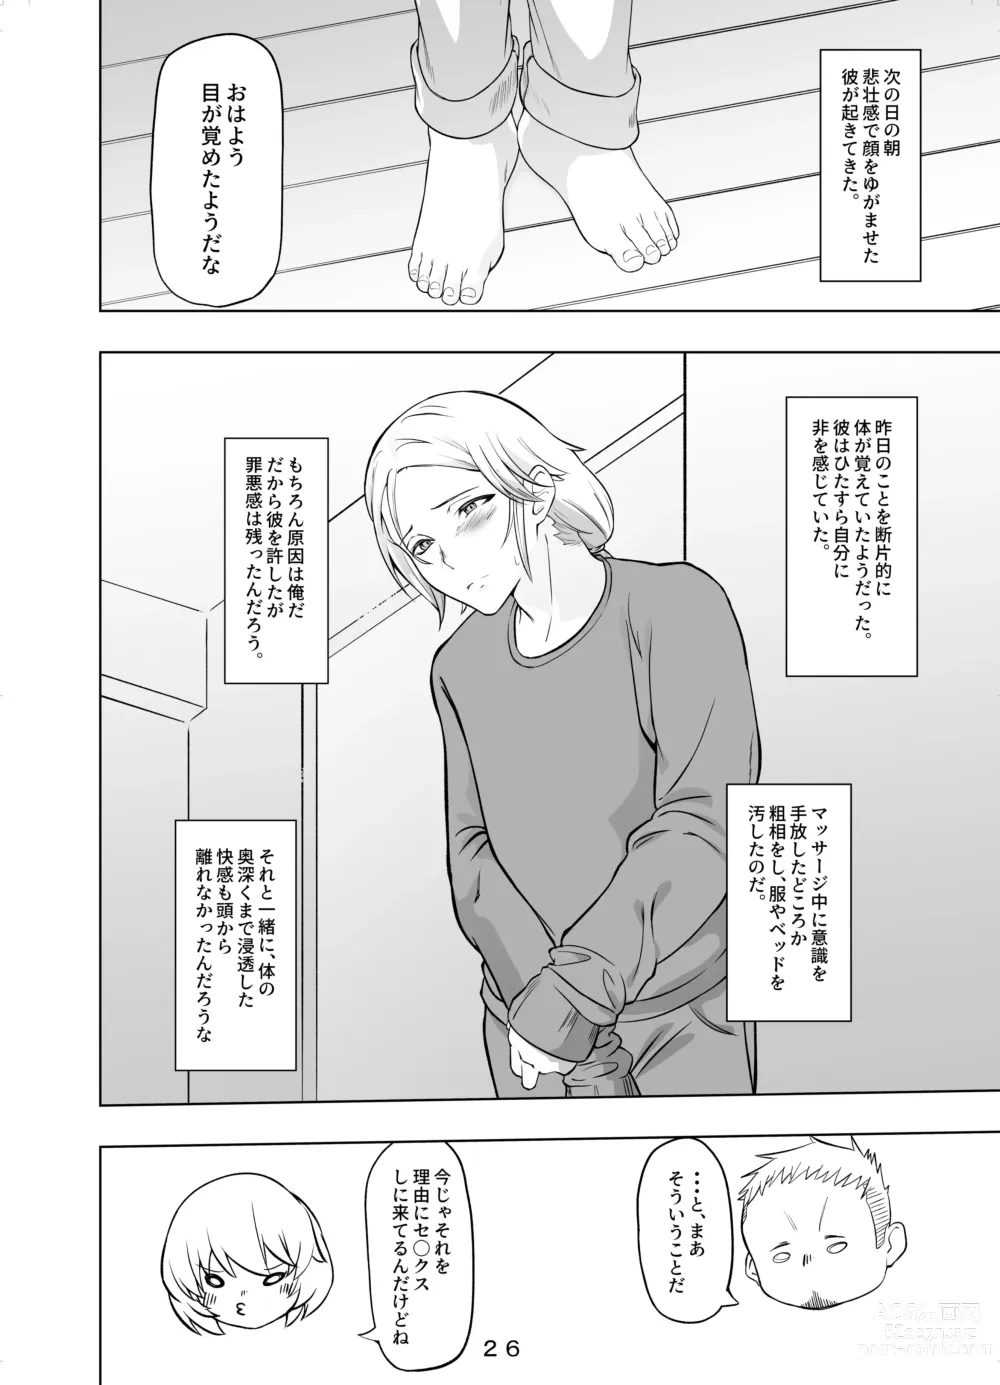 Page 27 of doujinshi Hirotta Onii-san o Ecchi ni Shita Ano Hi no Hanashi